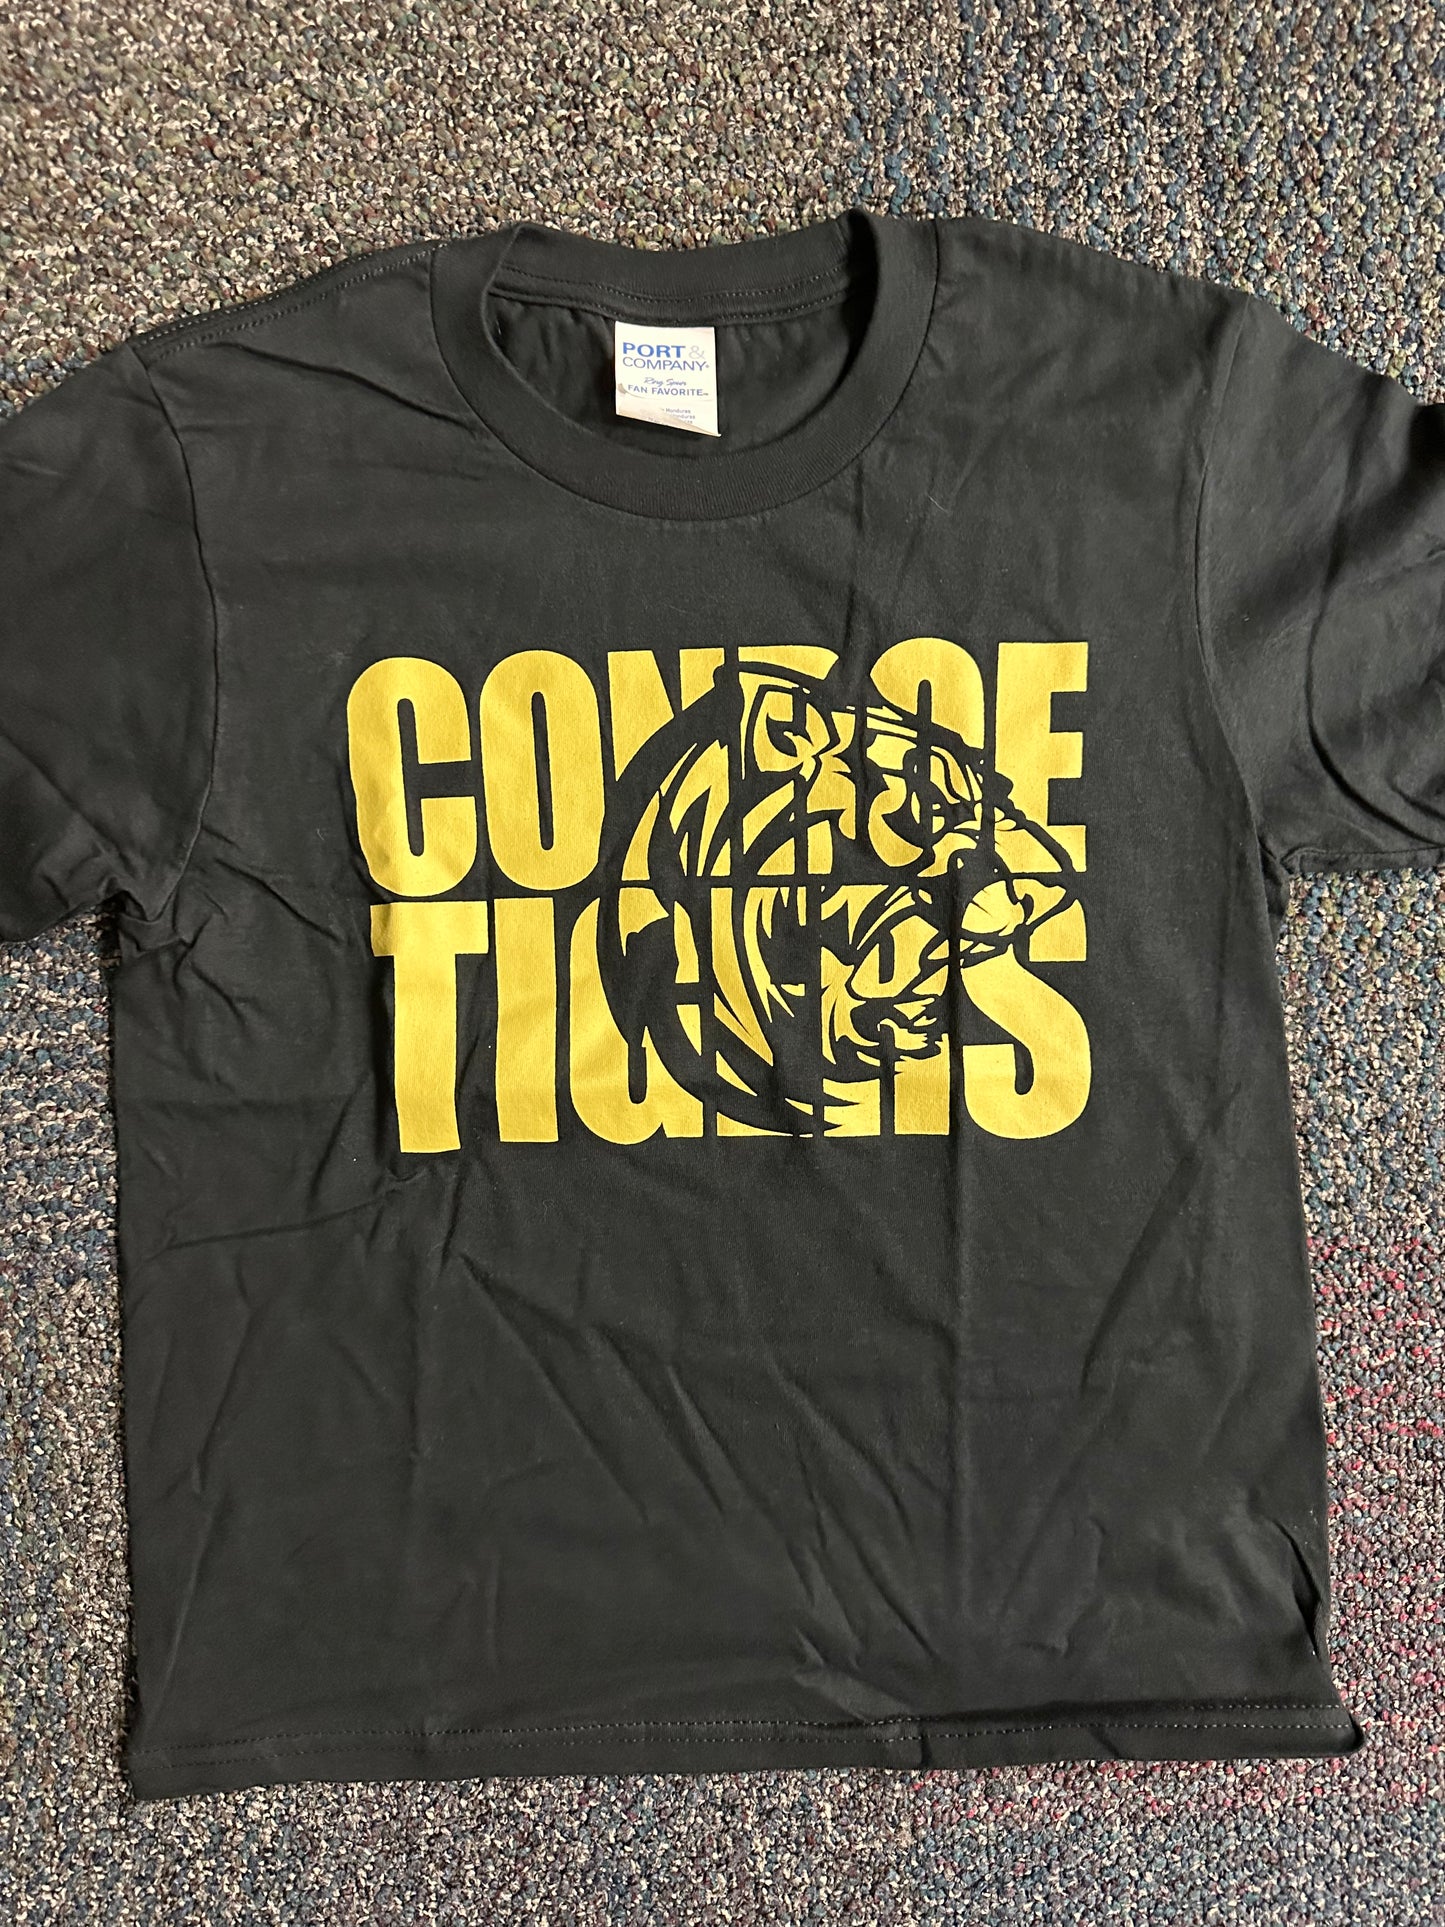 Conroe Tigers Shirt - Black